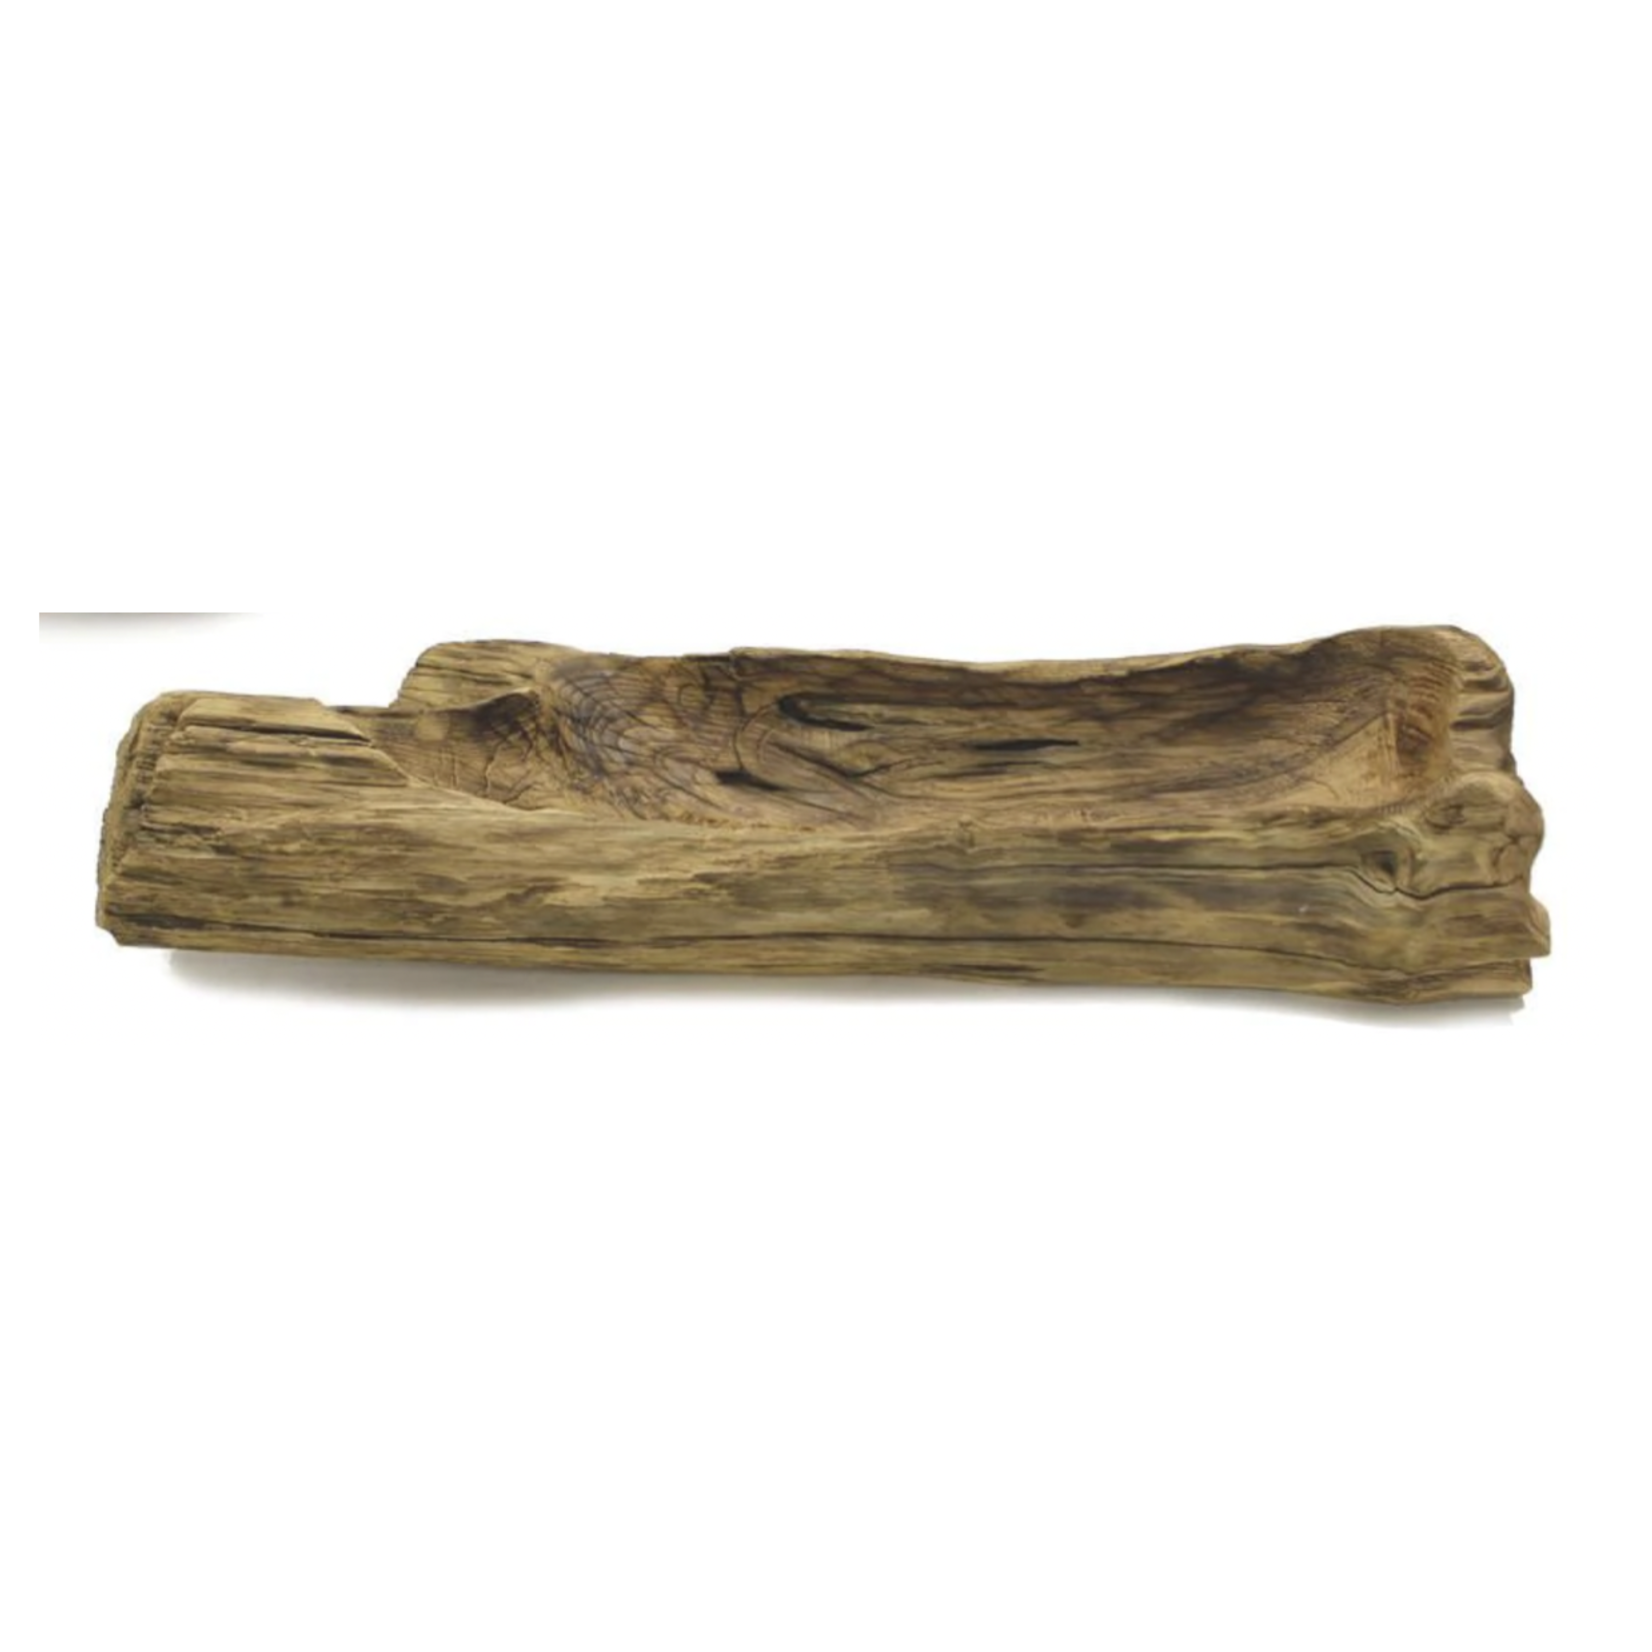 6"H X 24"L X 10.5" Natural Wood Log